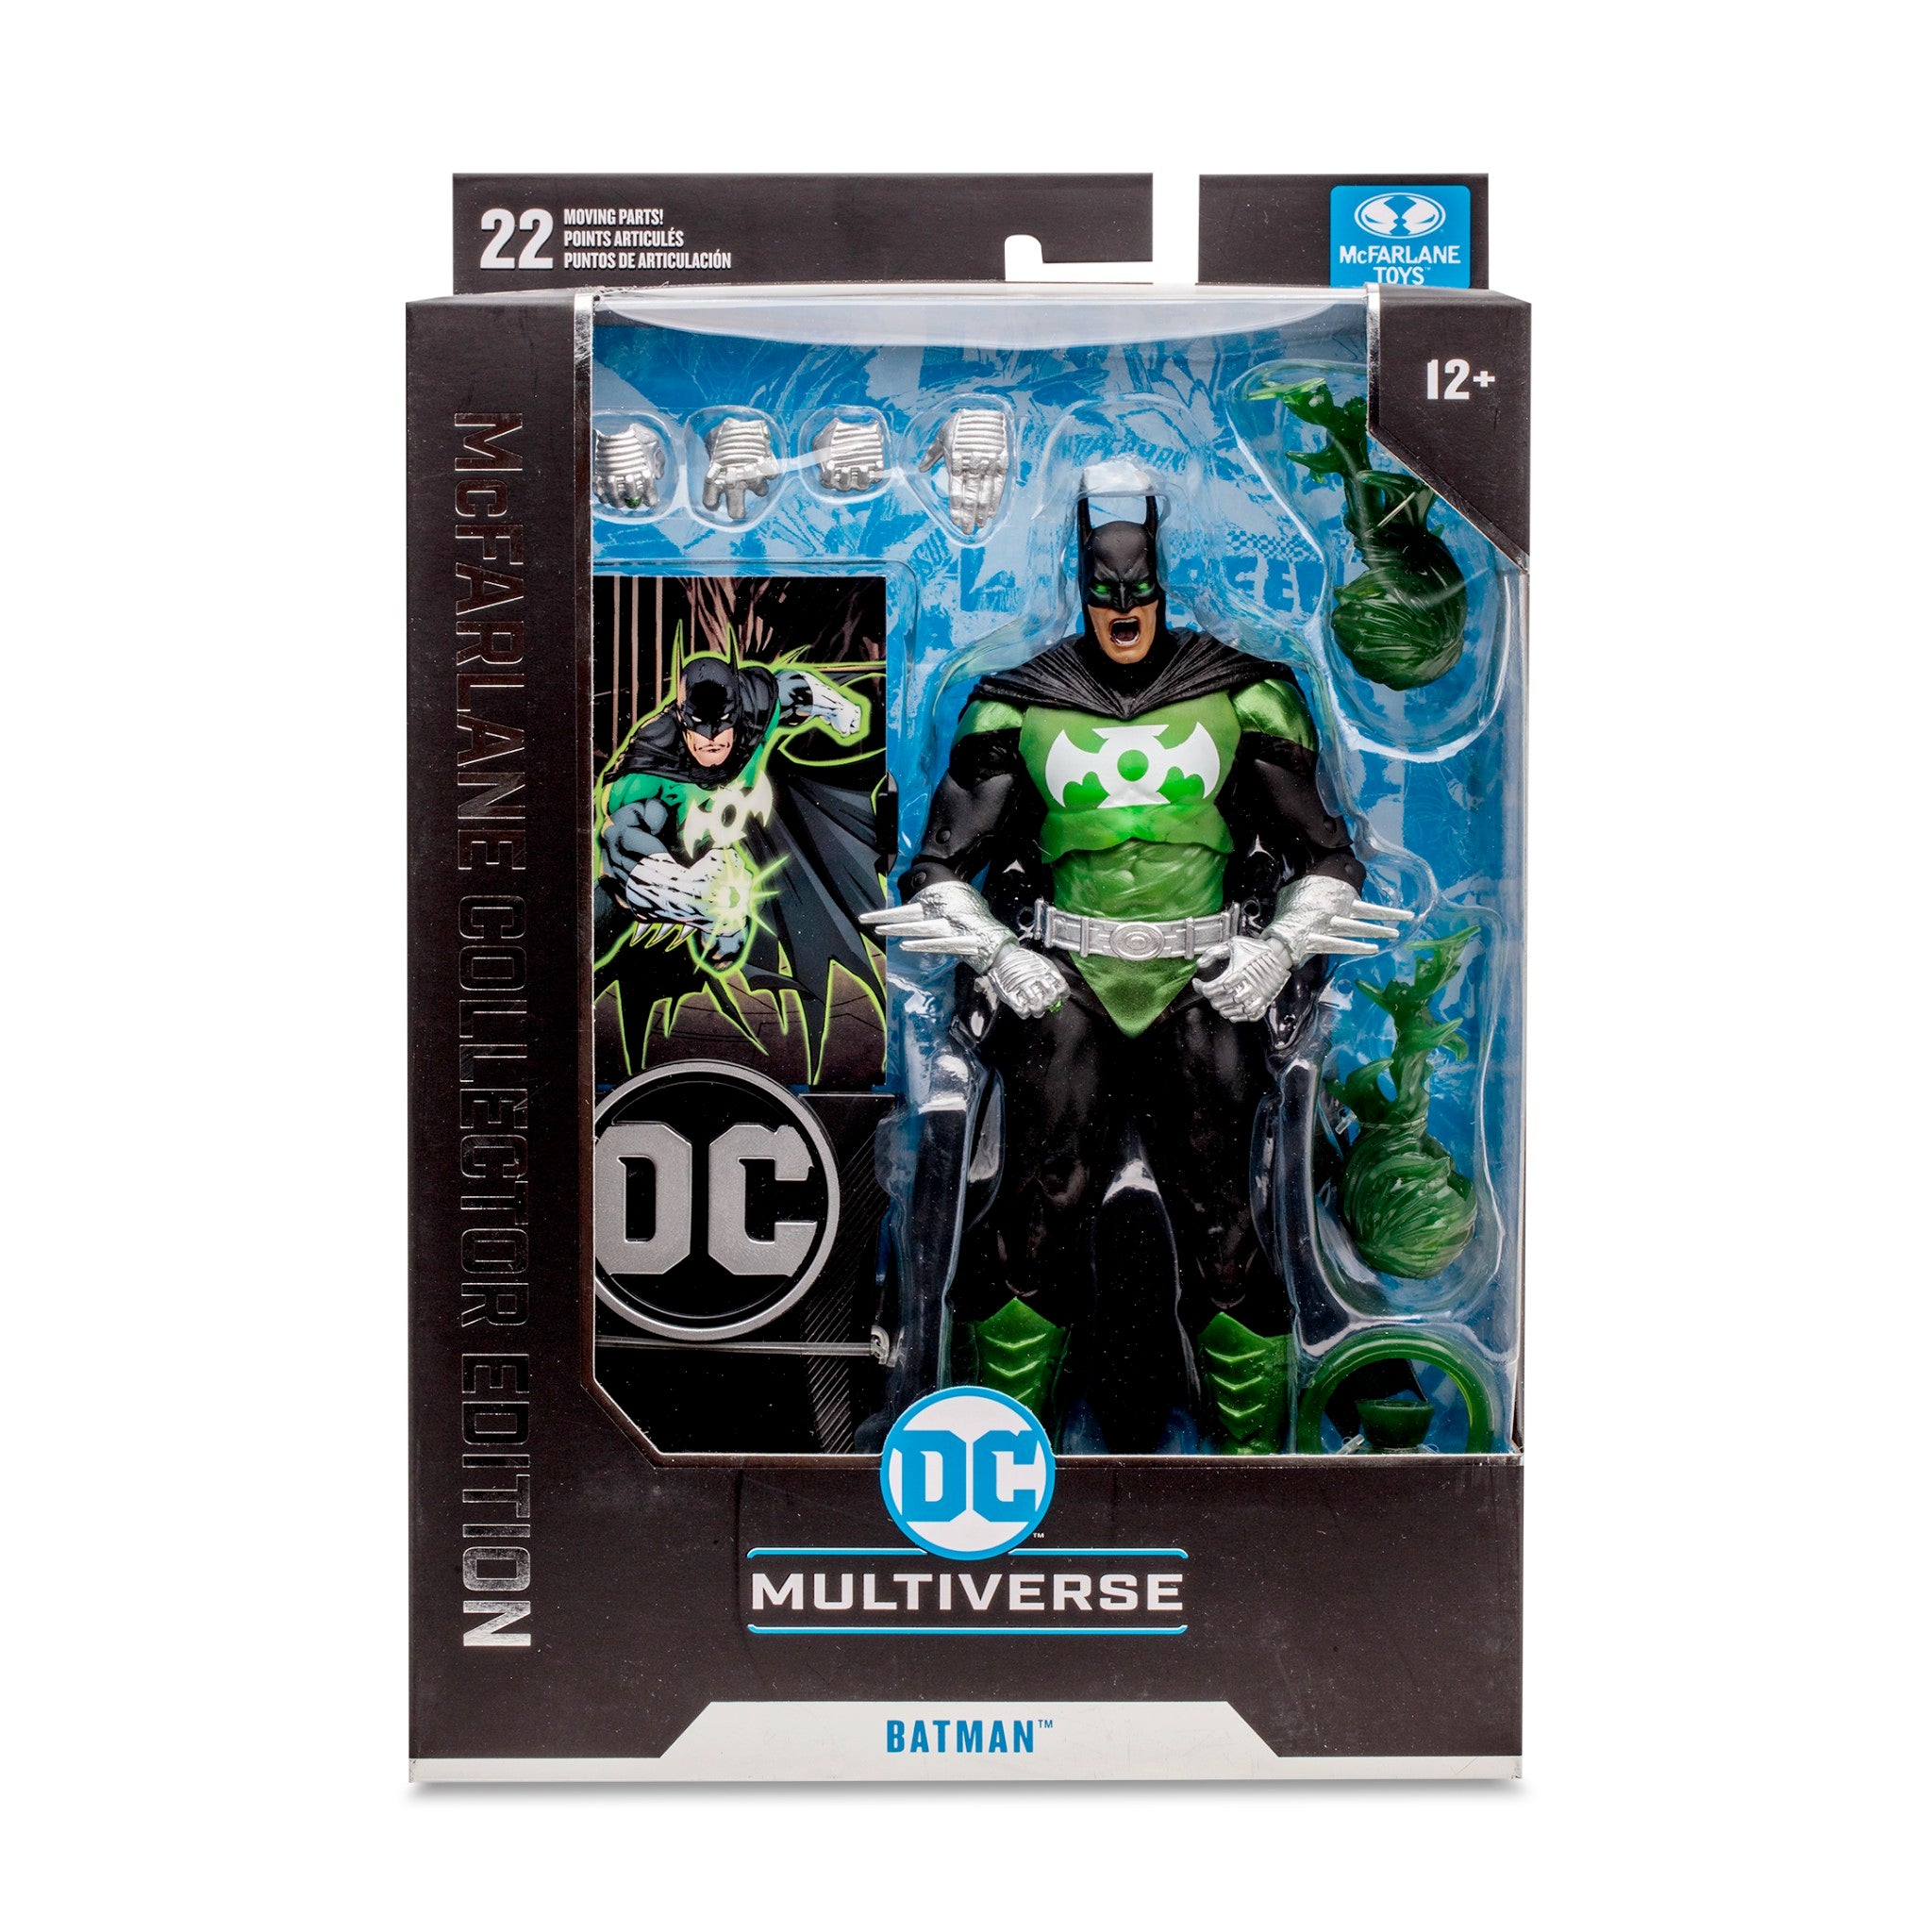 DC Multiverse Collector Edition Batman as Green Lantern - McFarlane Toys-7